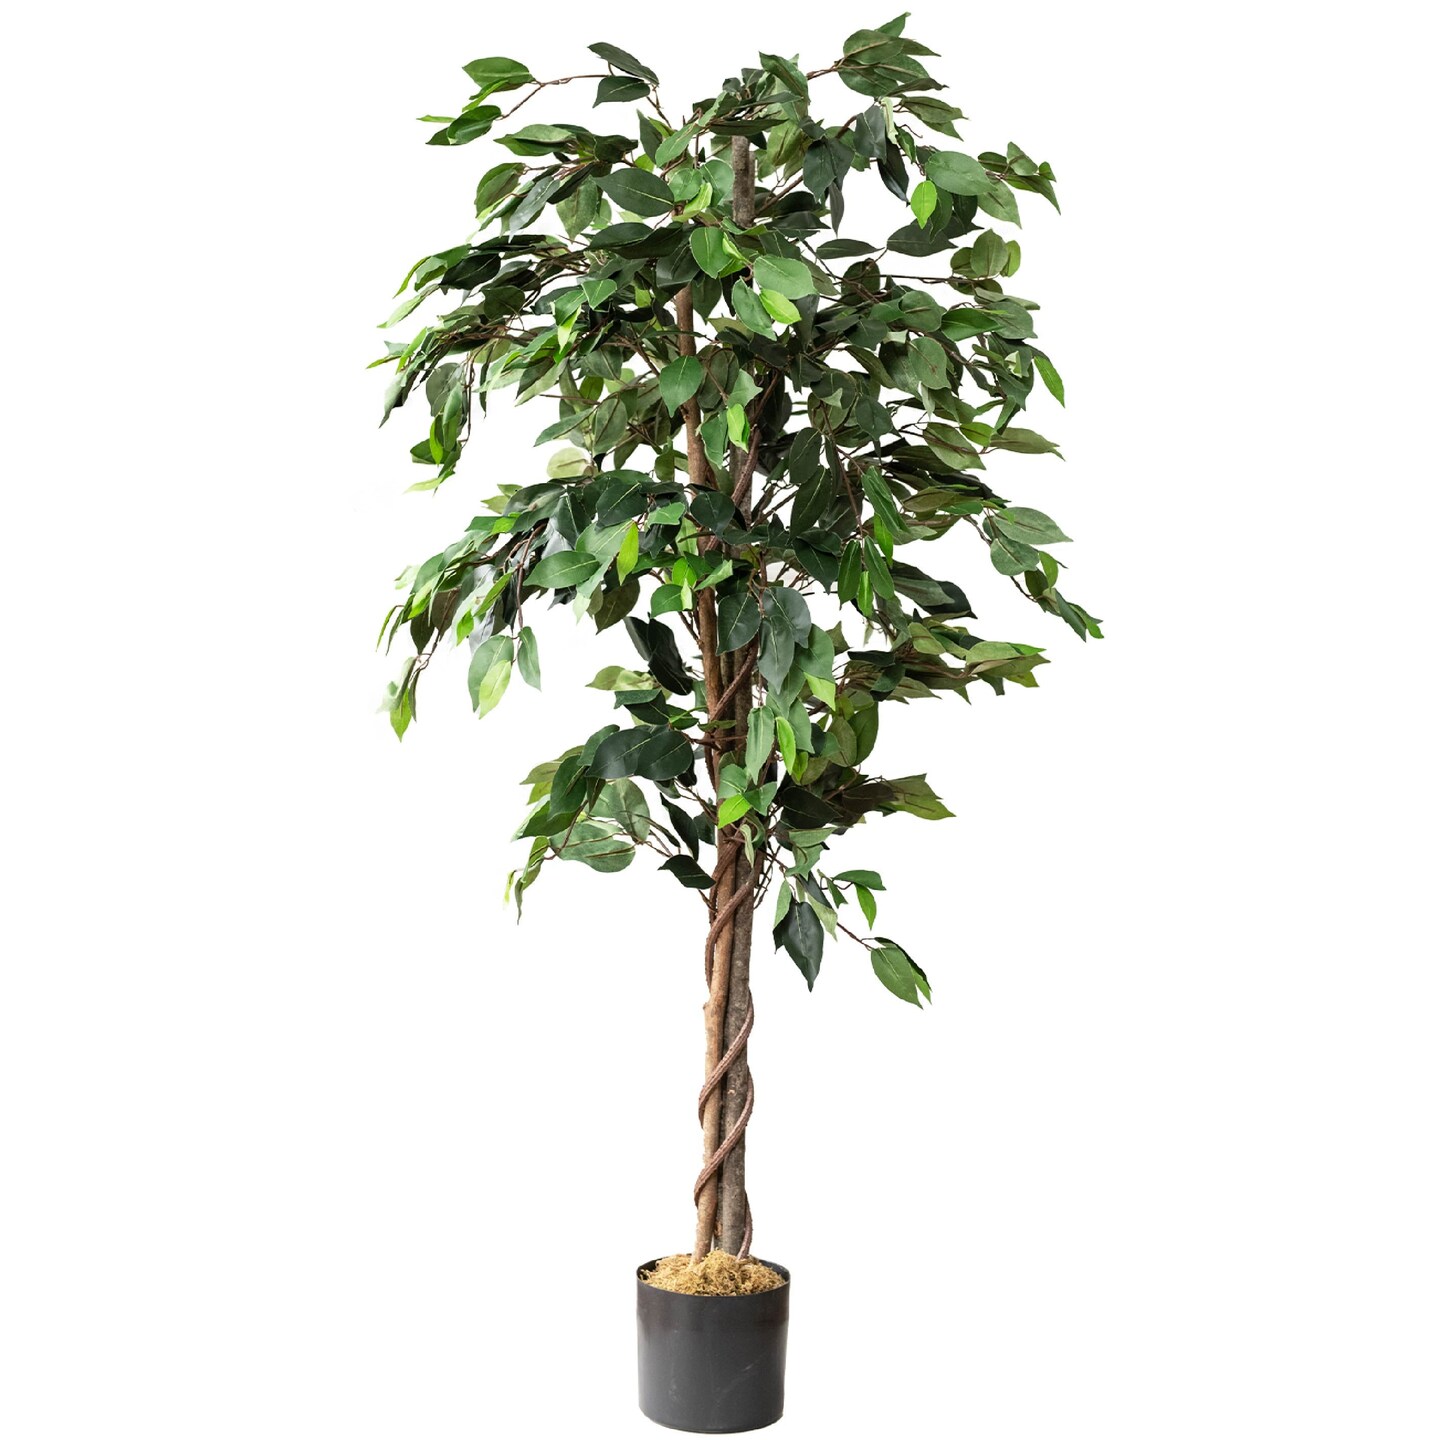 50cm Large Artificial Plants Office Home Garden Faux Plant Tree